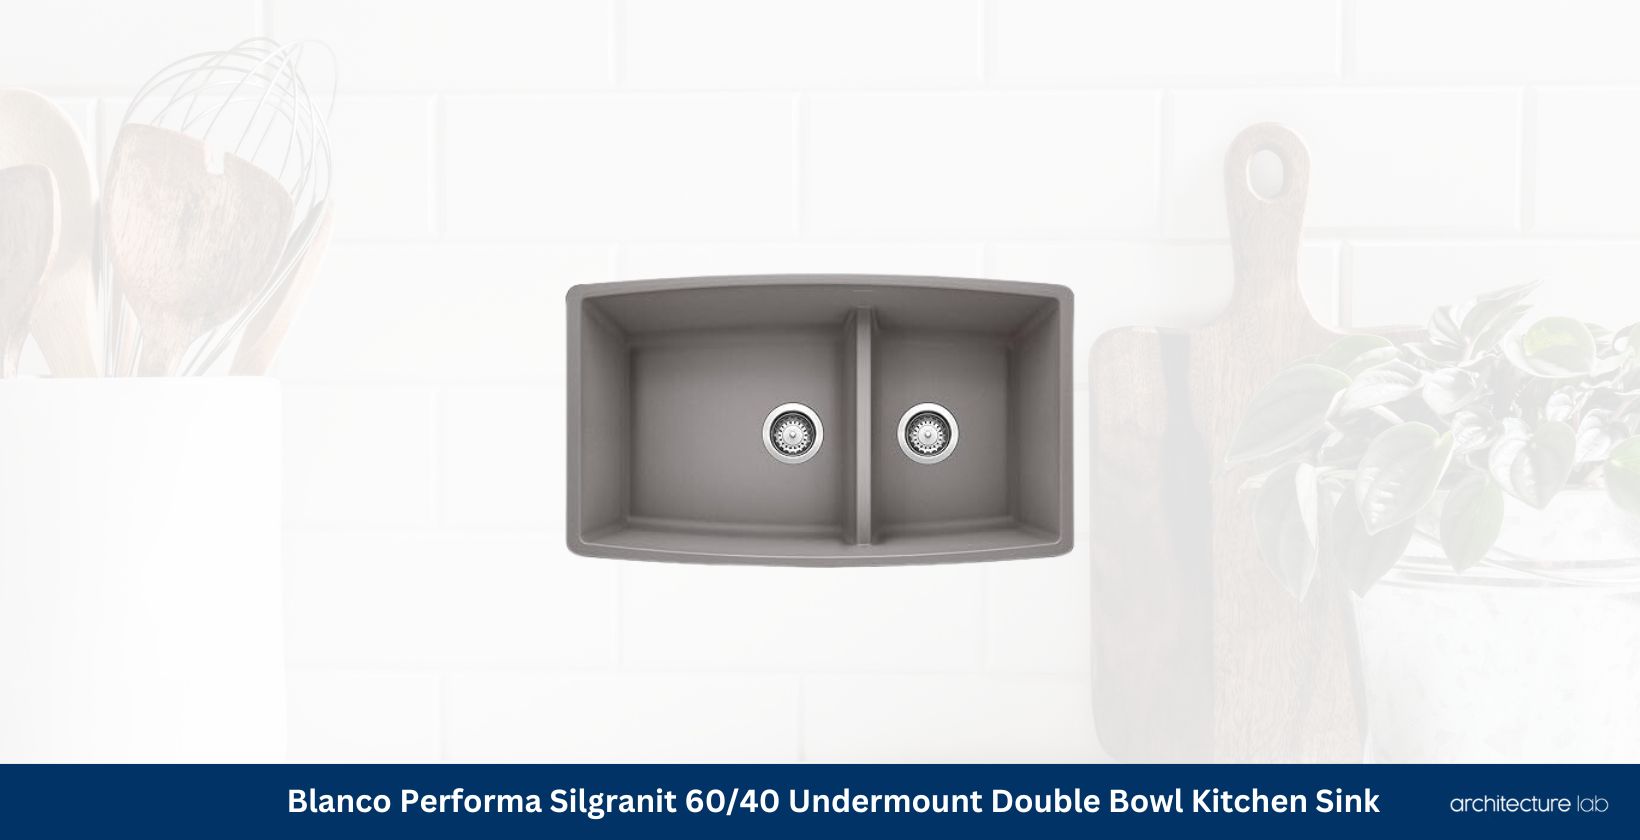 Blanco metallic gray 441309 performa silgranit kitchen sink